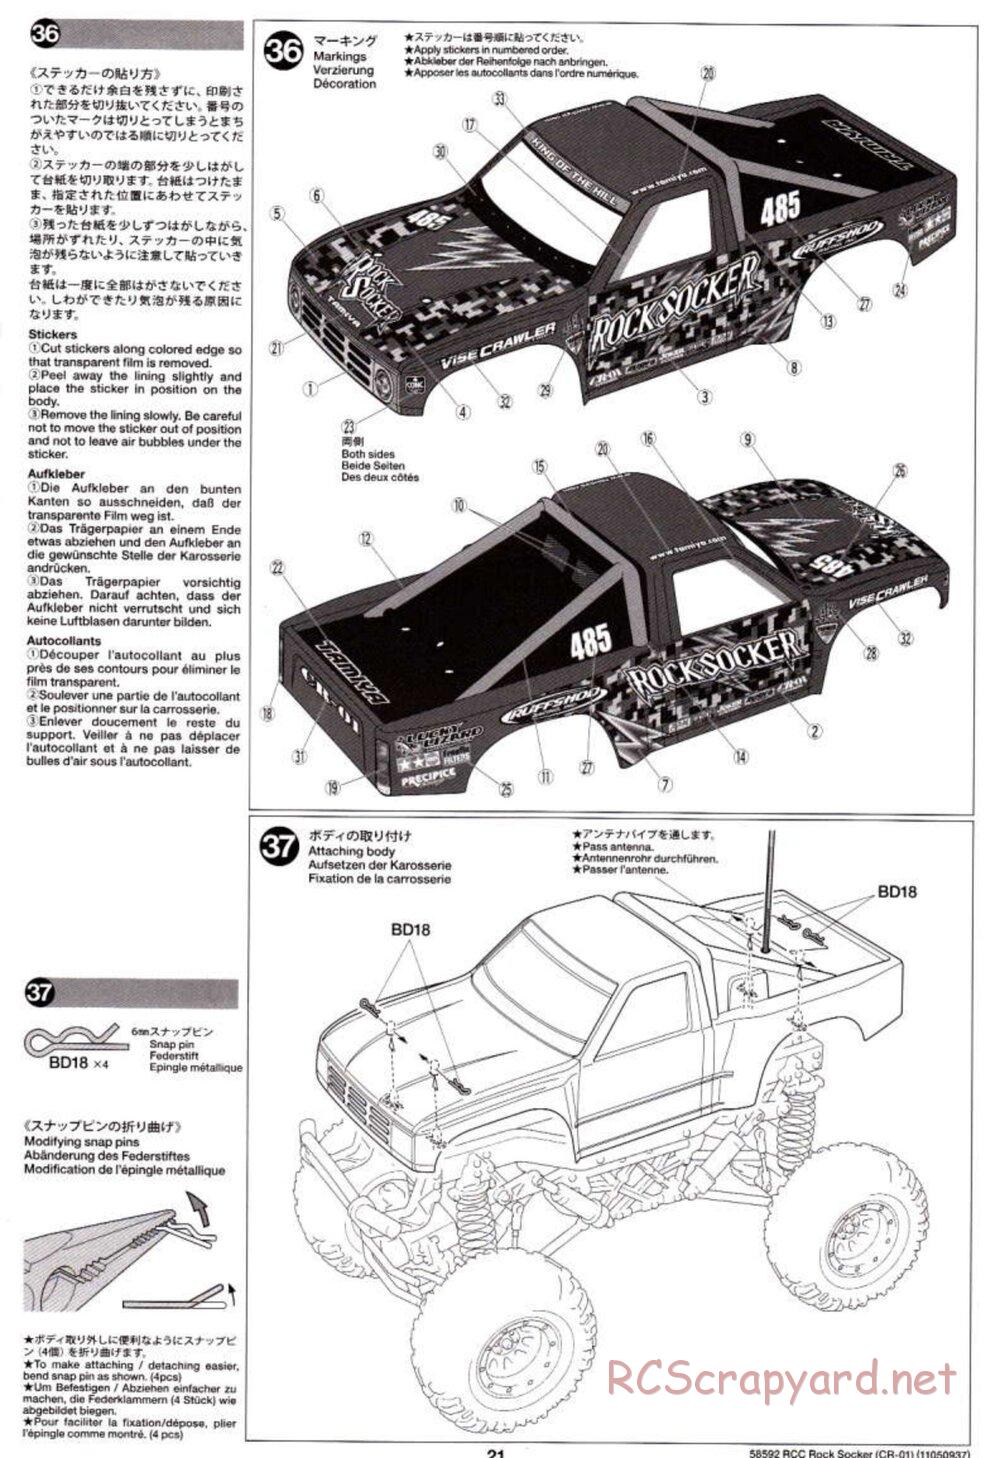 Tamiya - Rock Socker - CR-01 Chassis - Manual - Page 21